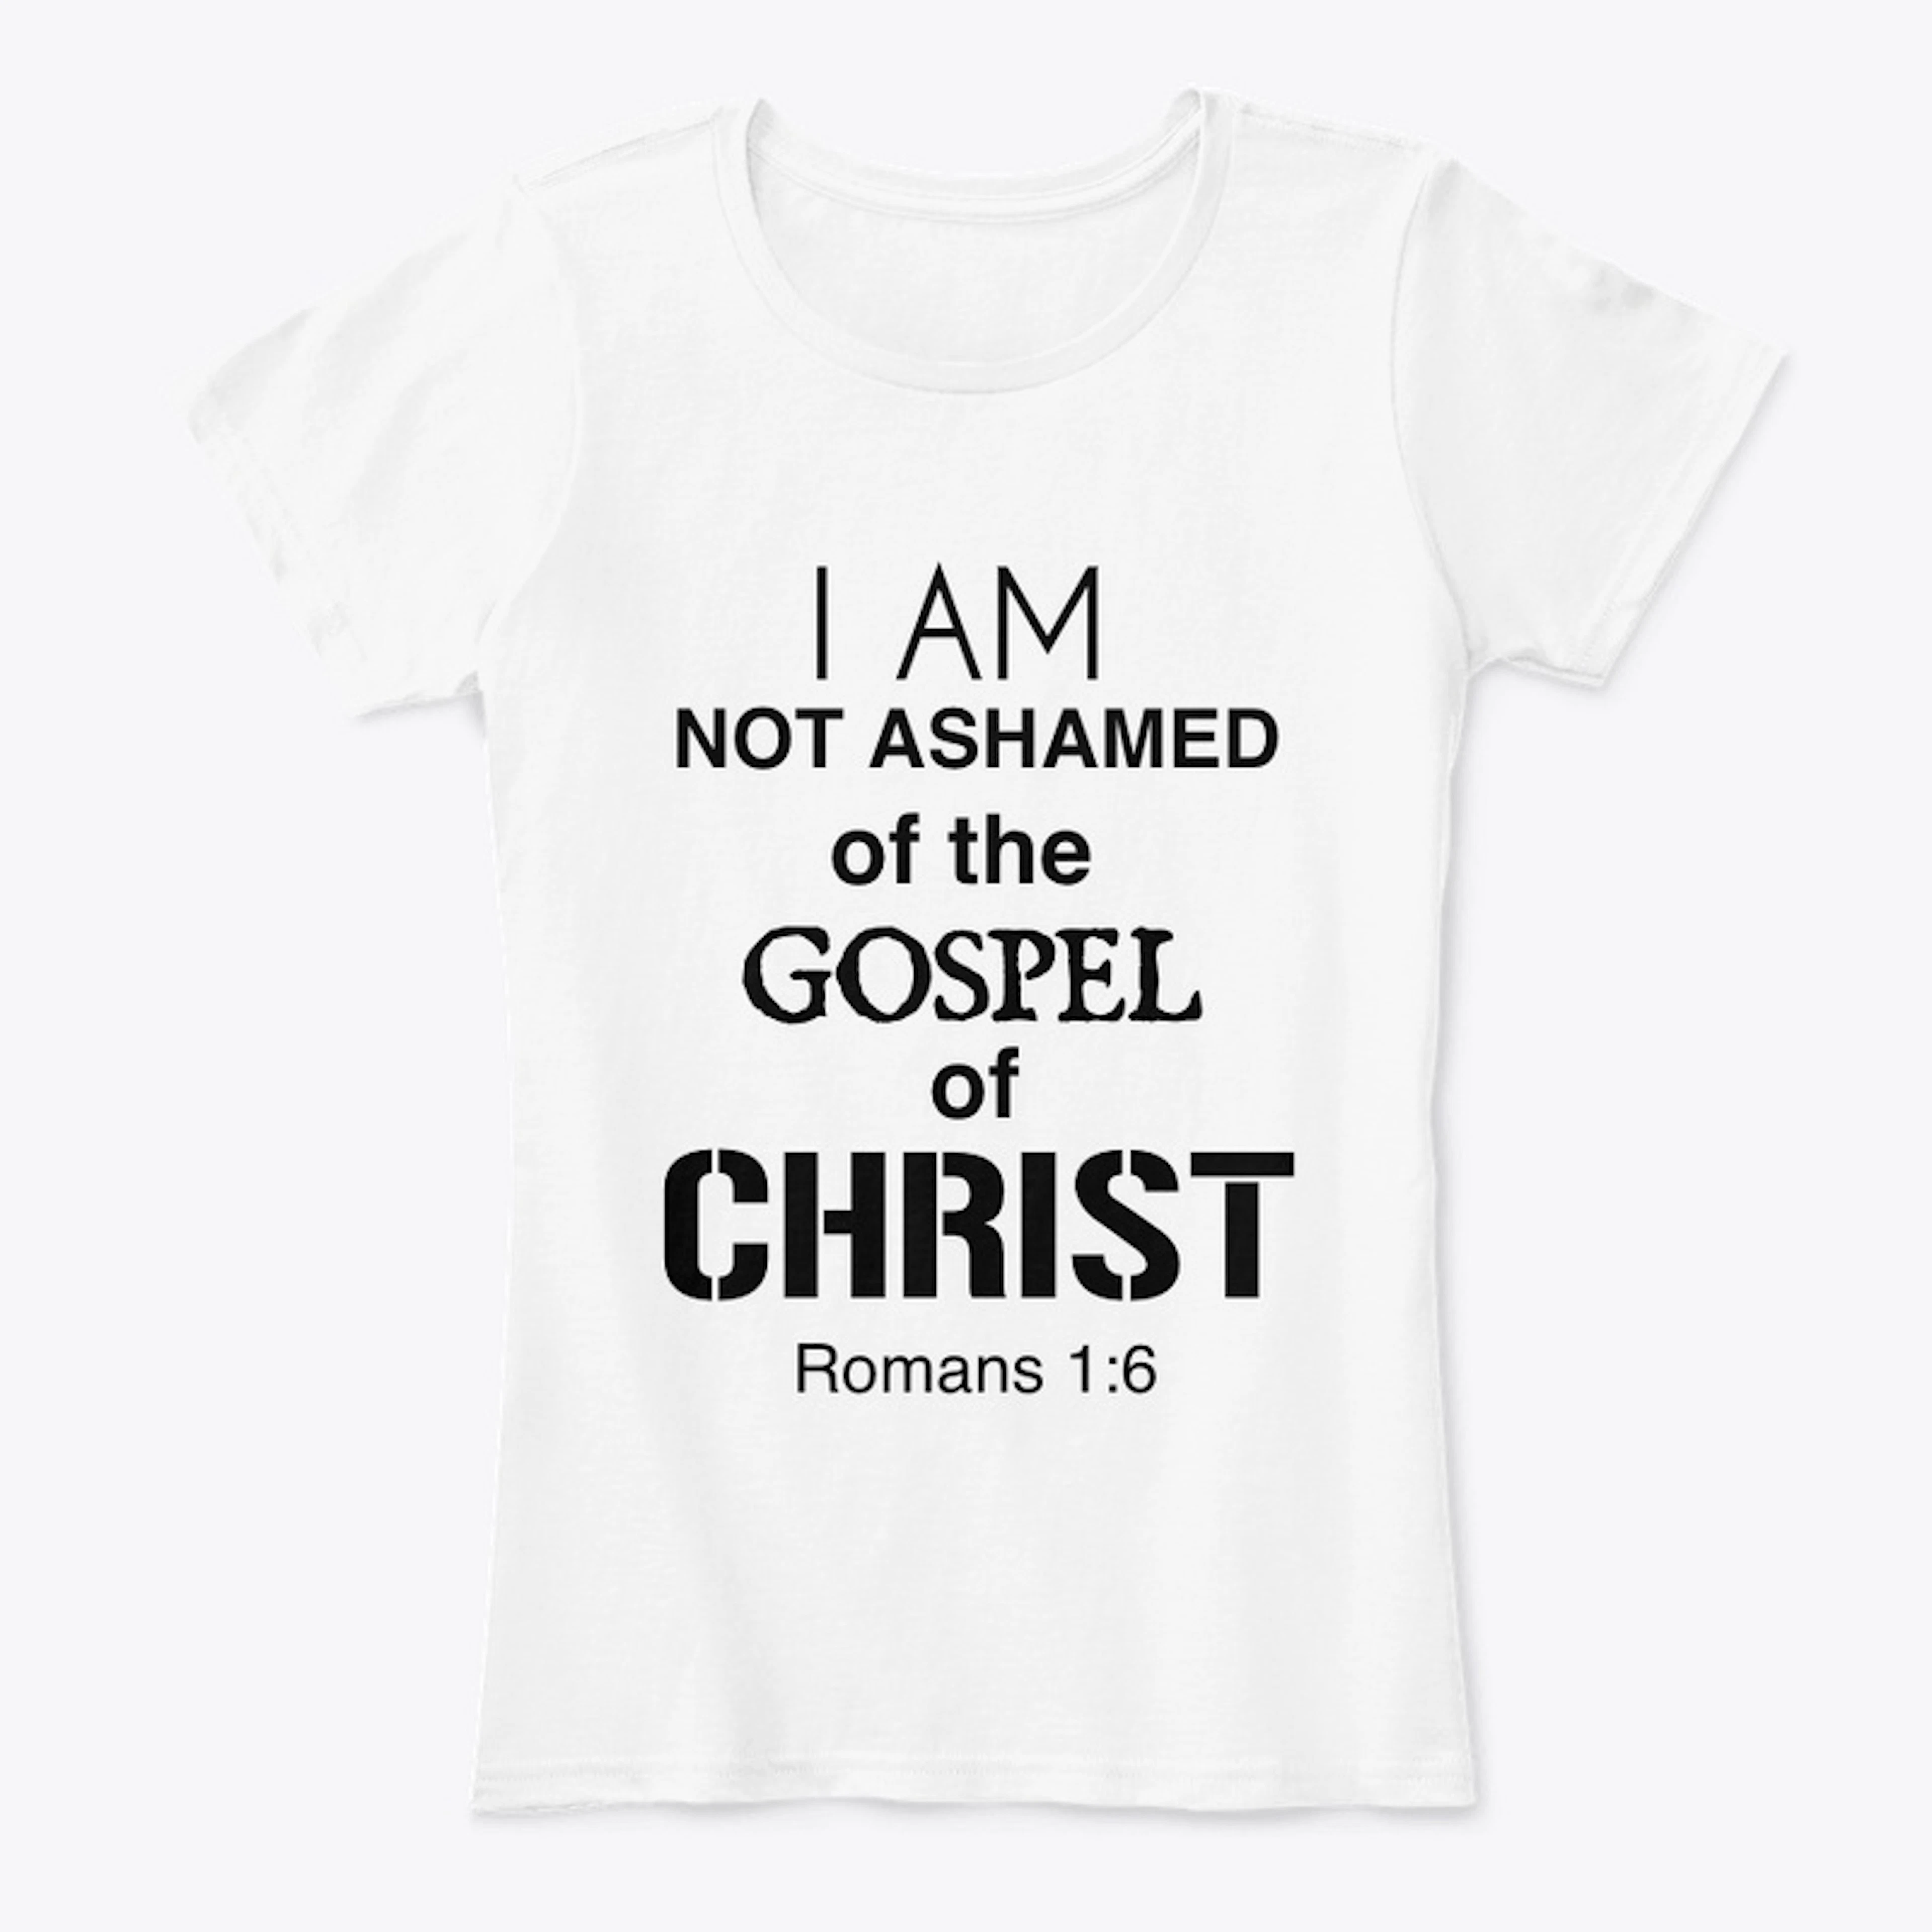 I AM NOT ASHAMED OF THE GOSPEL 